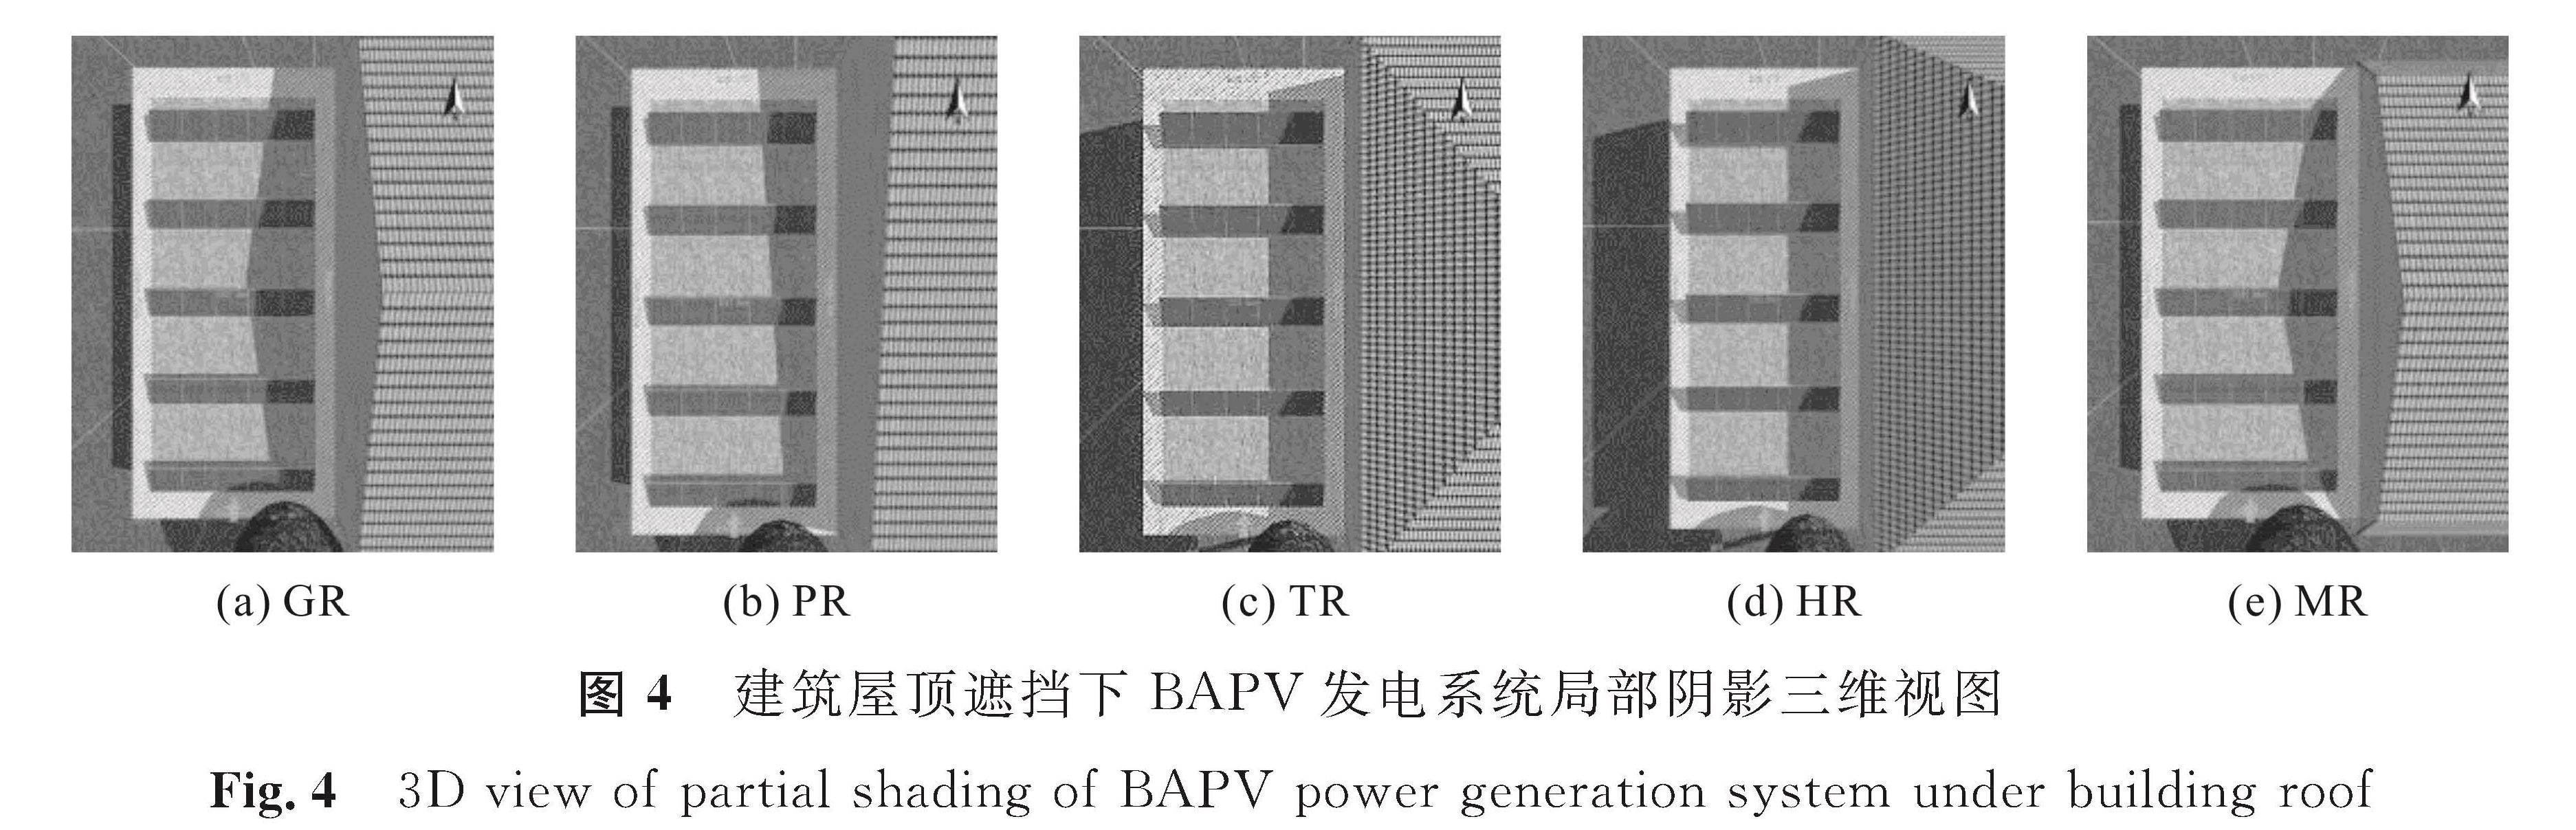 图4 建筑屋顶遮挡下BAPV发电系统局部阴影三维视图<br/>Fig.4 3D view of partial shading of BAPV power generation system under building roof